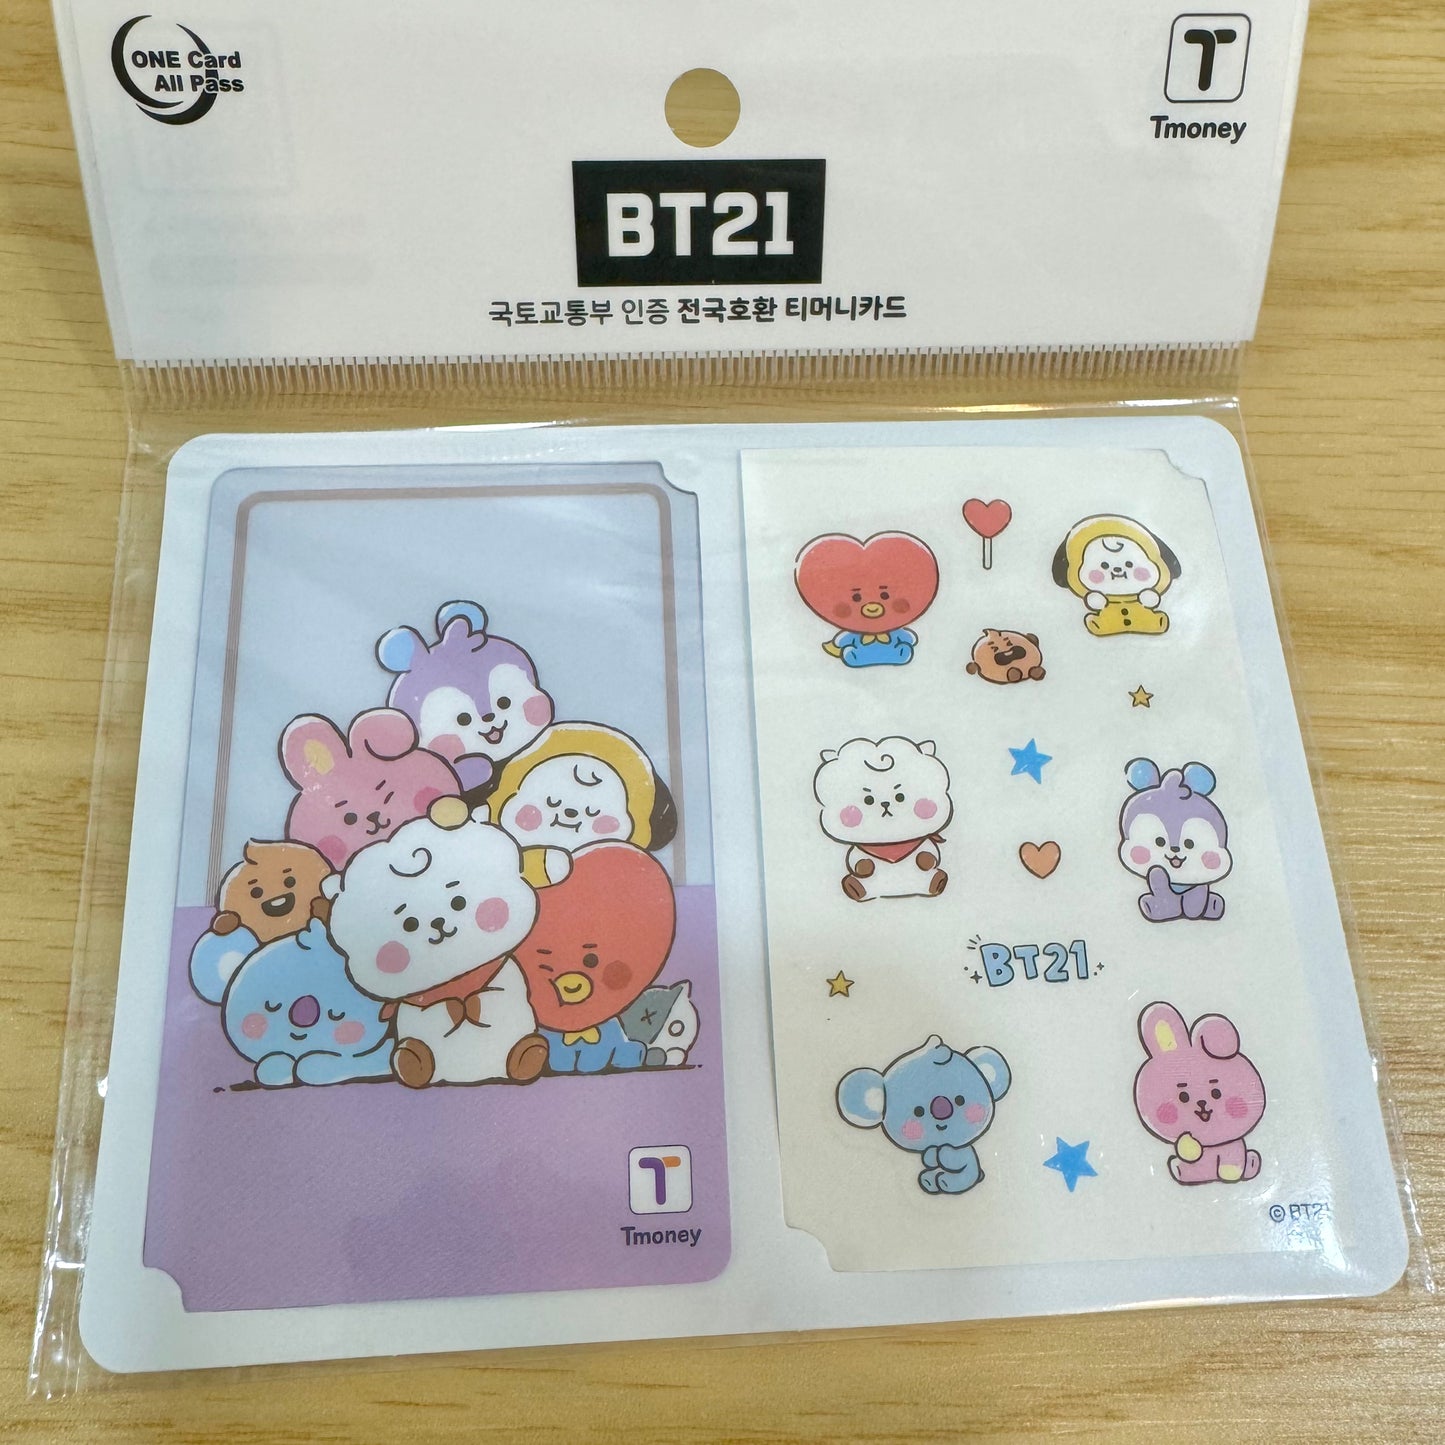 BT21 Korea Transportation T-money Card